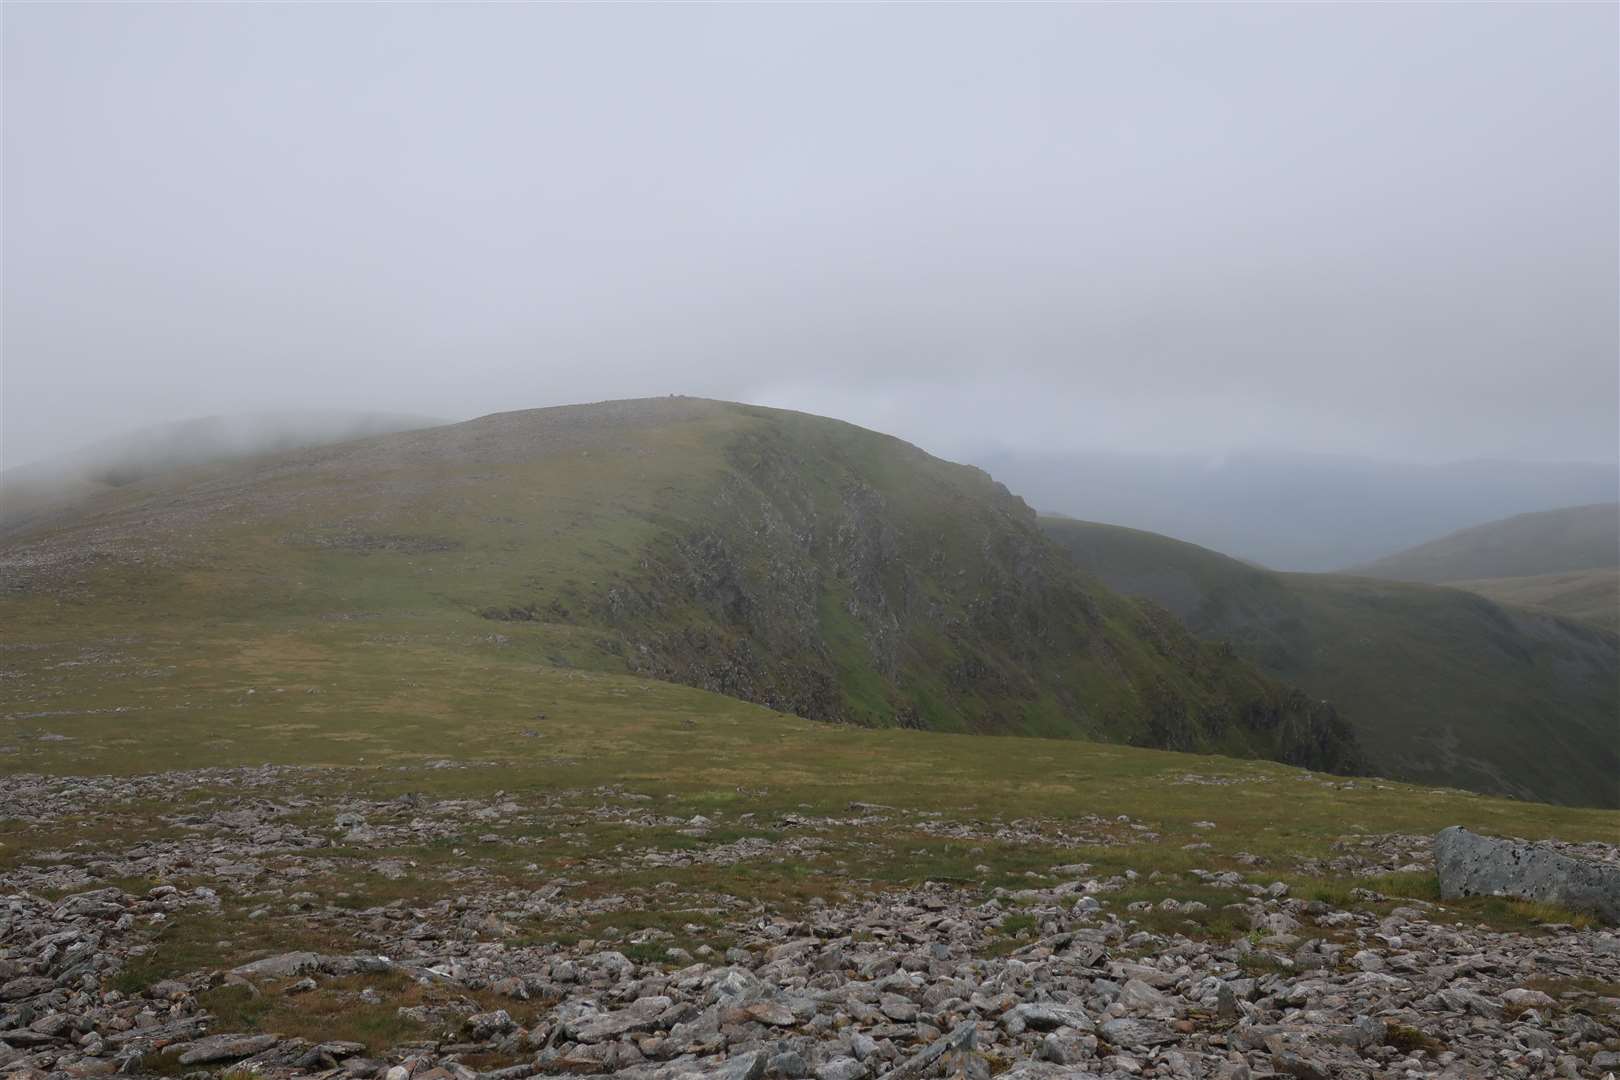 A glimpse of Beinn a'Chaorainn's summit as the cloud blows over.